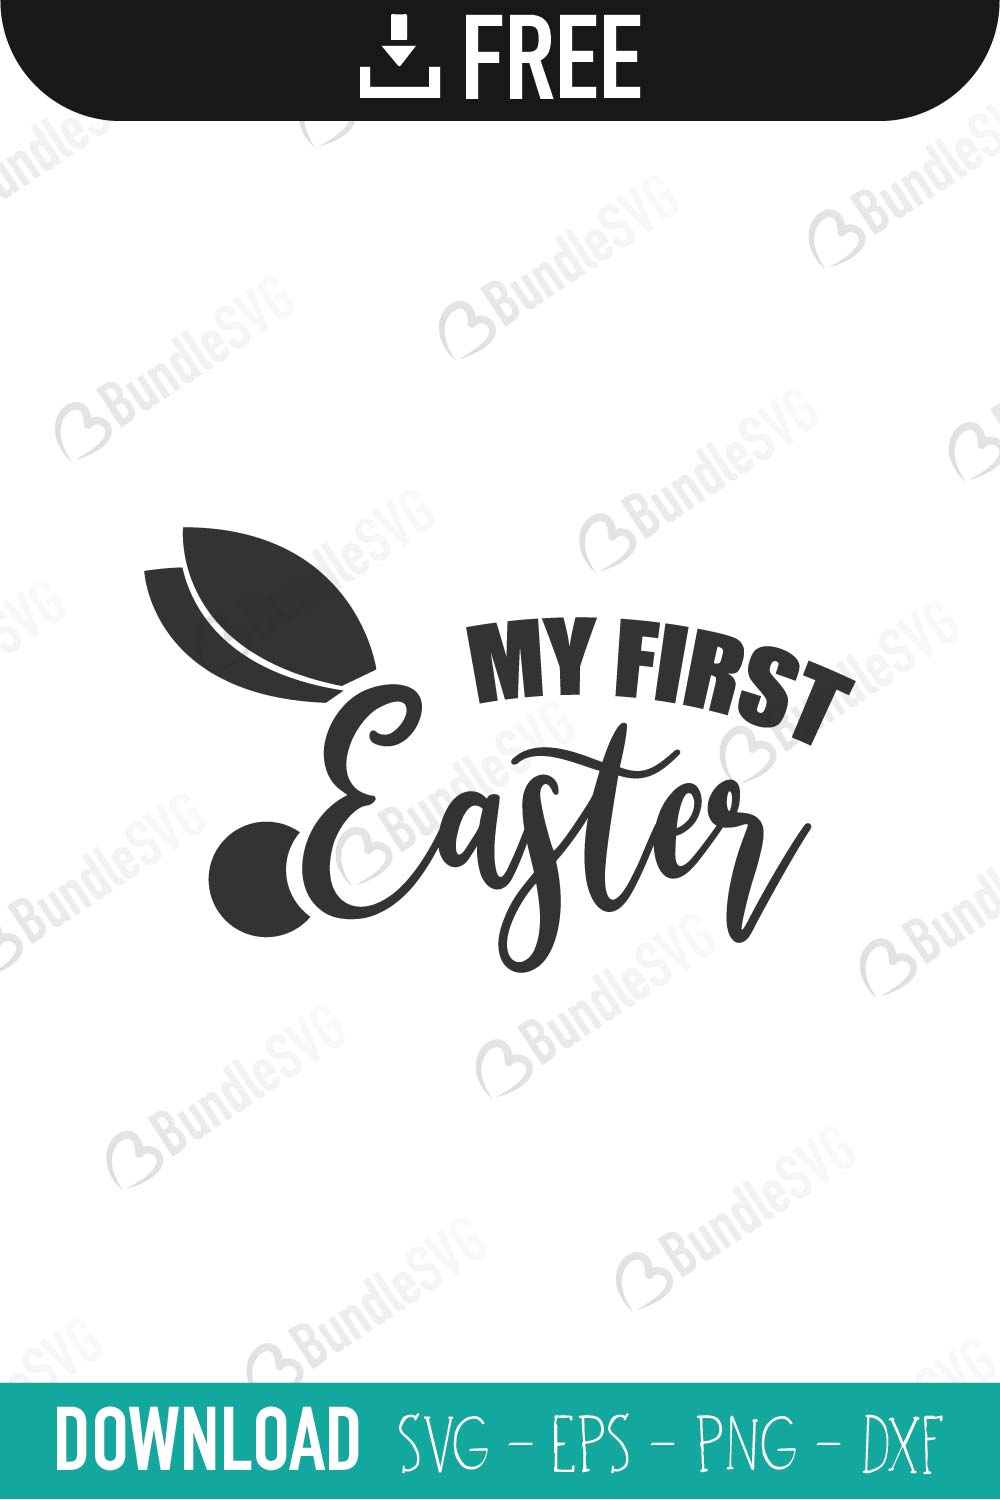 Download My First Easter SVG Free Download | BundleSVG.com